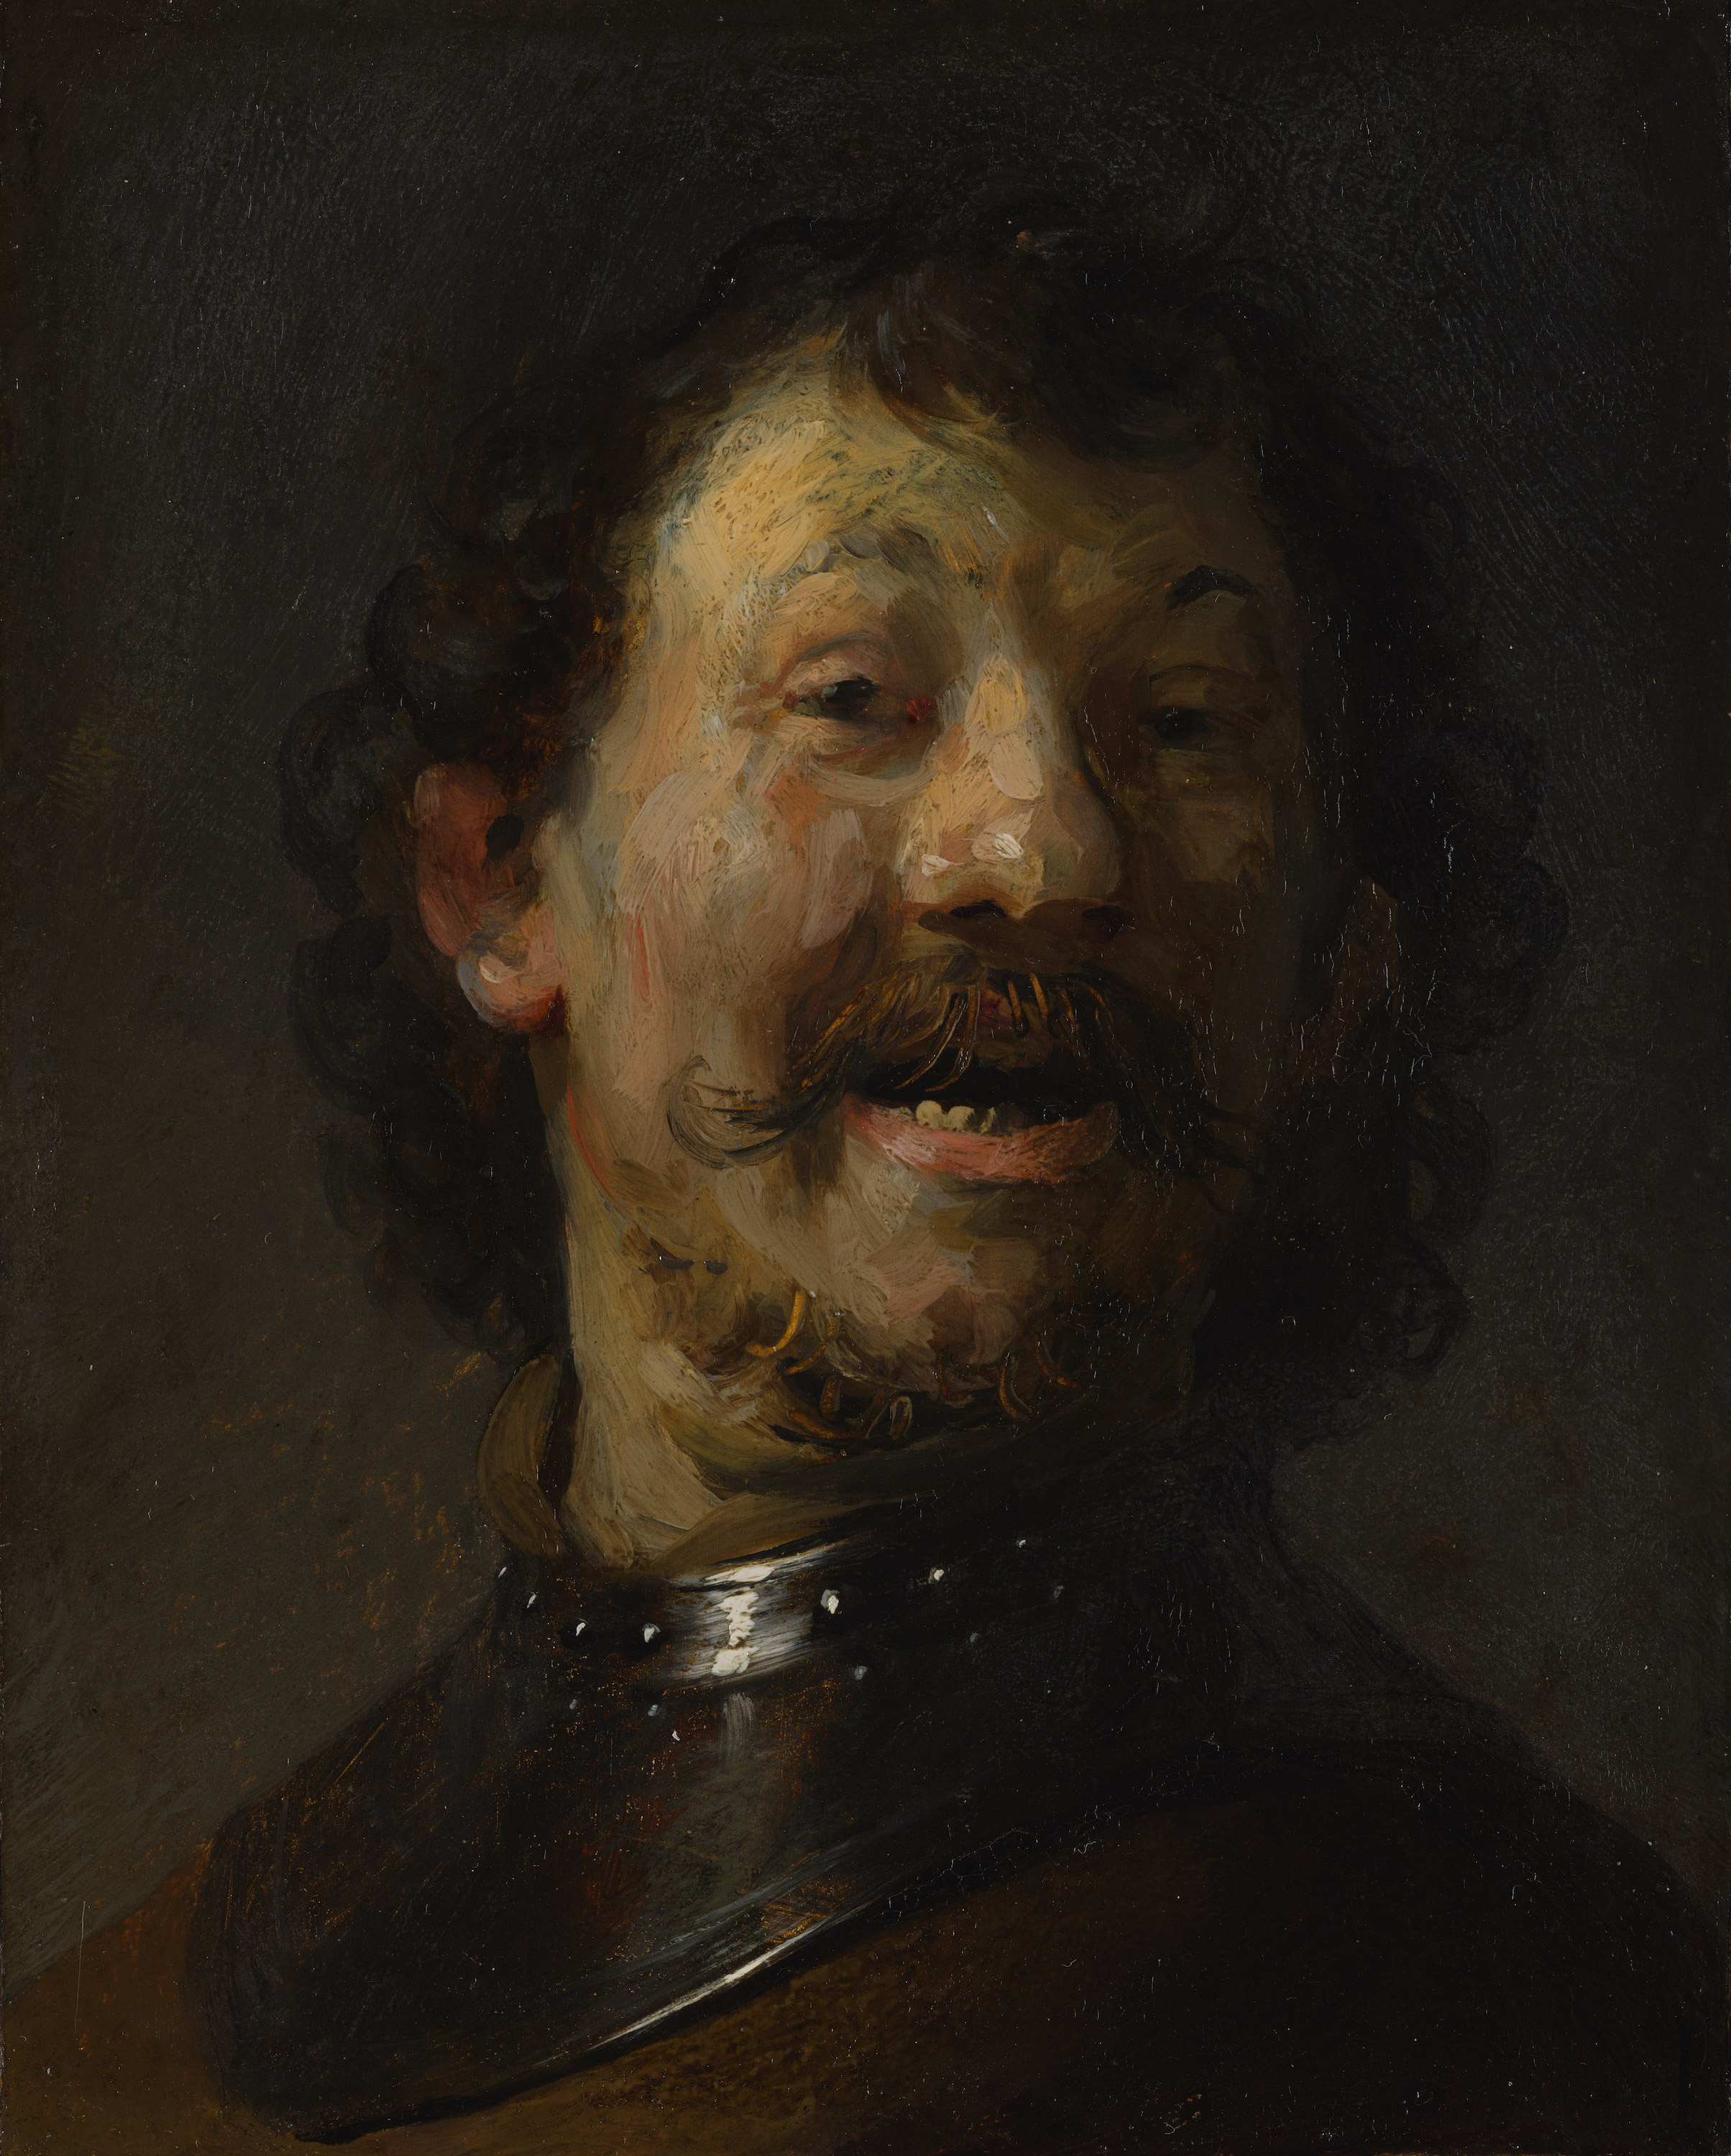 笑う男 by Rembrandt van Rijn - 1629 - 1630年頃 - 15.3 x 12.2 cm 